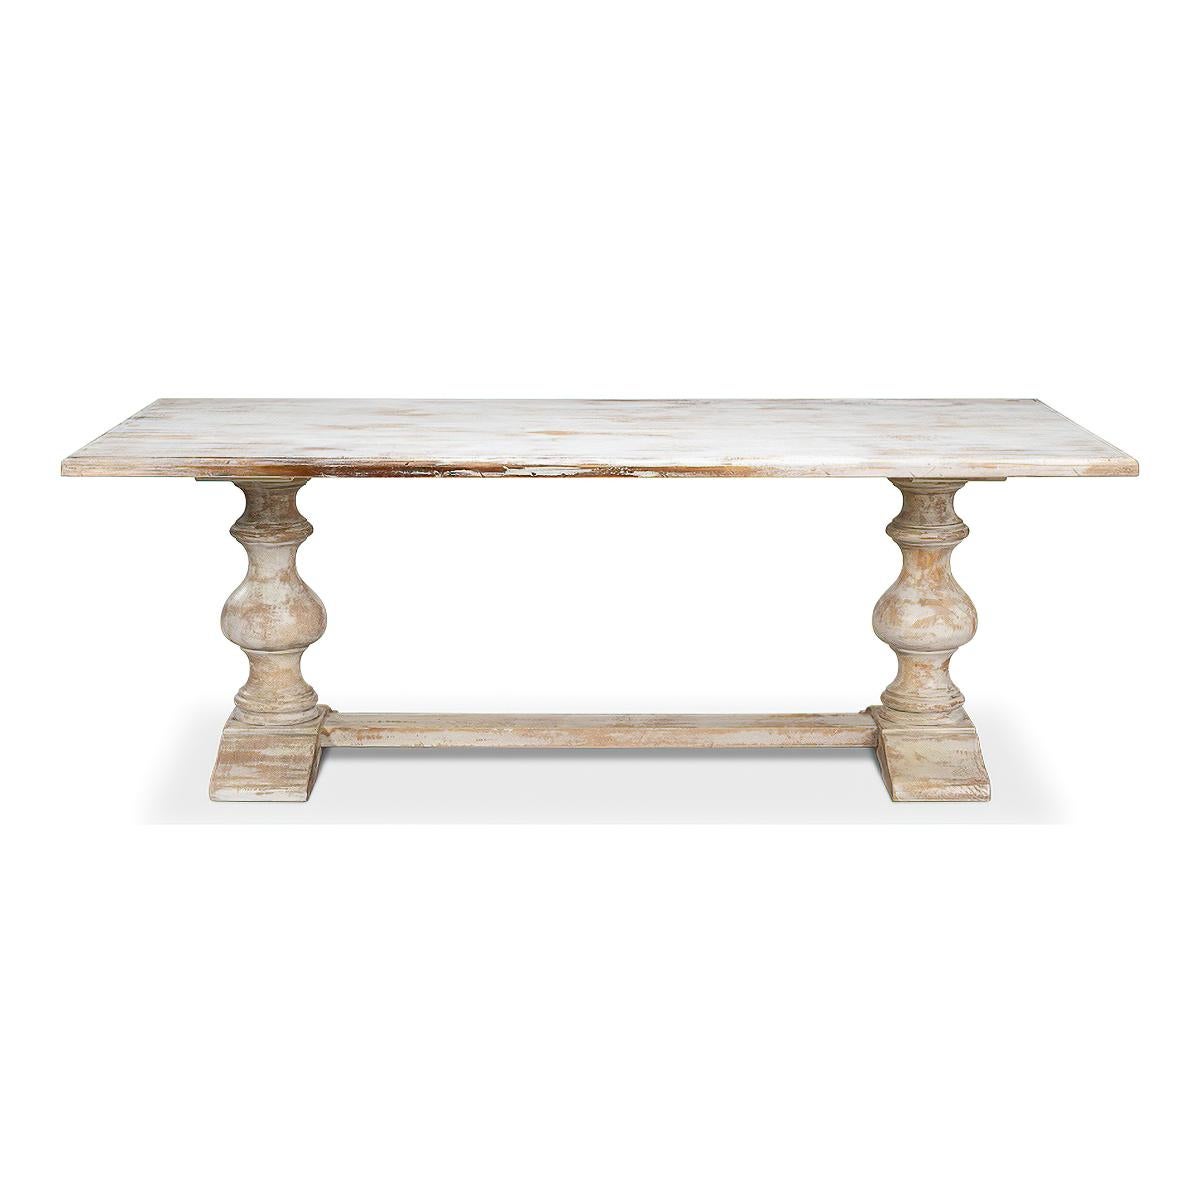 Une table de réfectoire provinciale française avec une finition unique peinte en blanc.  Avec un bord mouluré et élevé sur des pieds tournés balustres en forme de tréteau avec une civière. 

Dimensions : 84